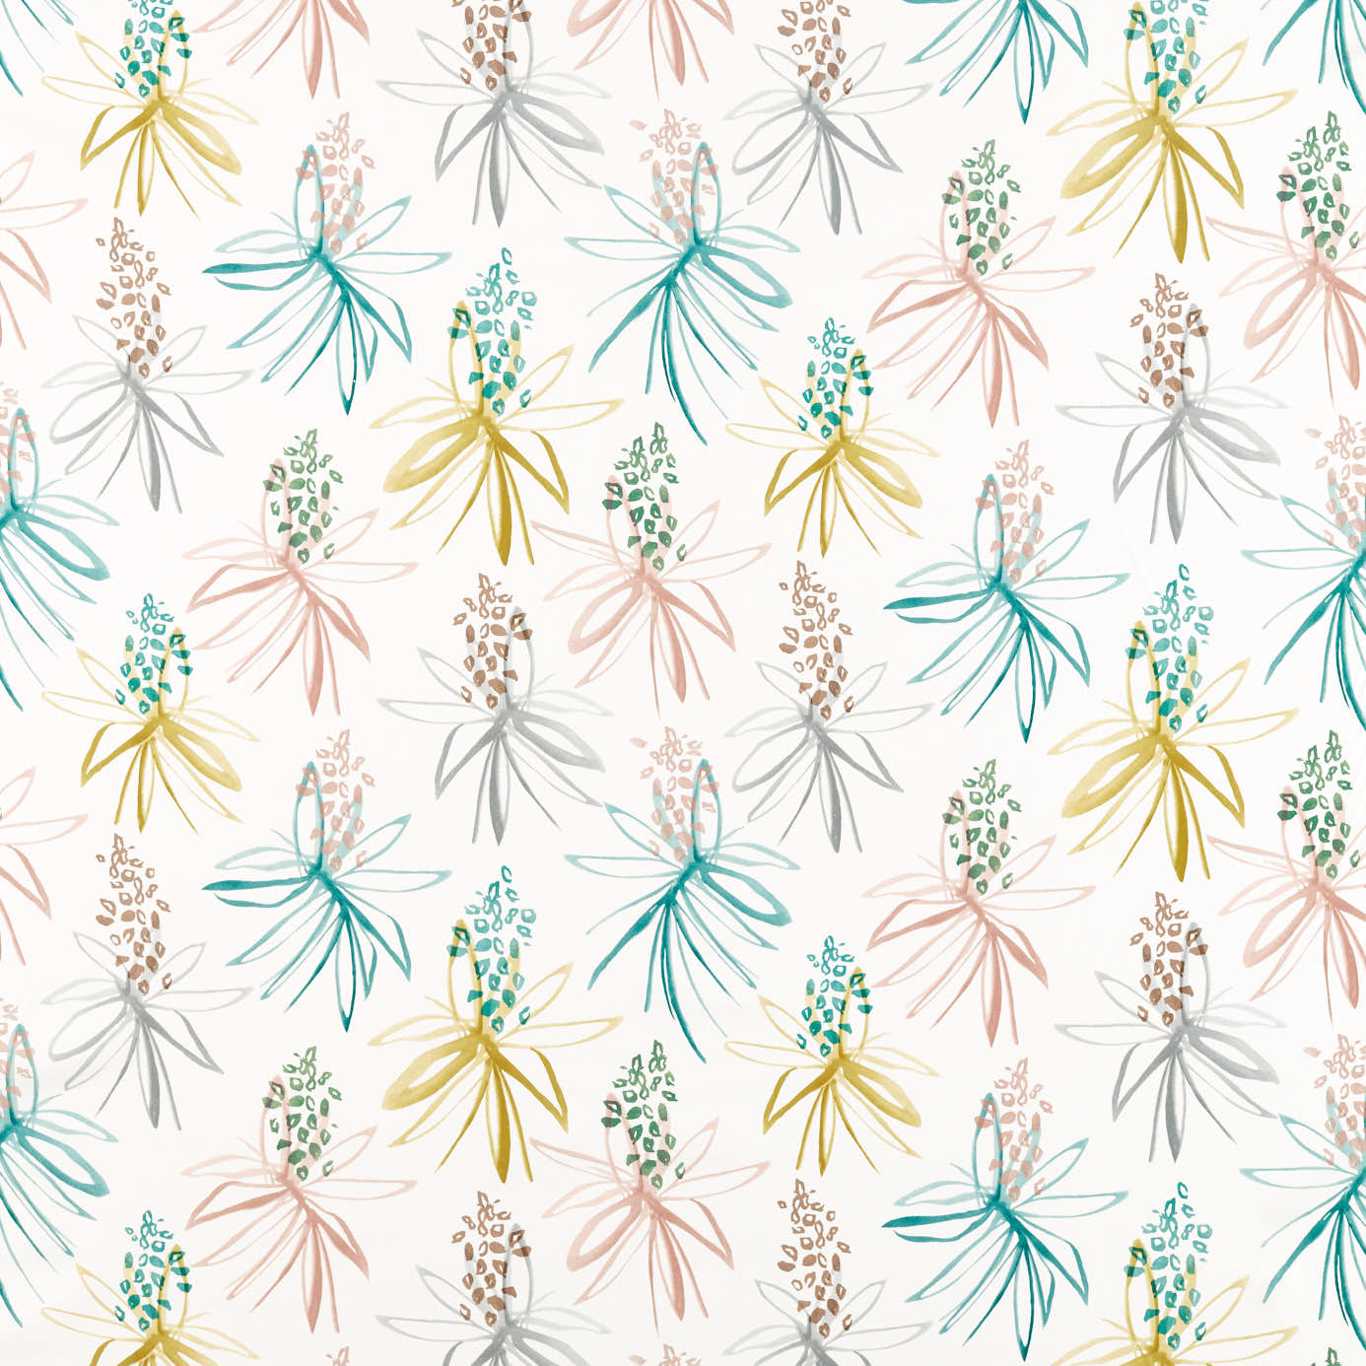 Tillandsia Fabric by Scion